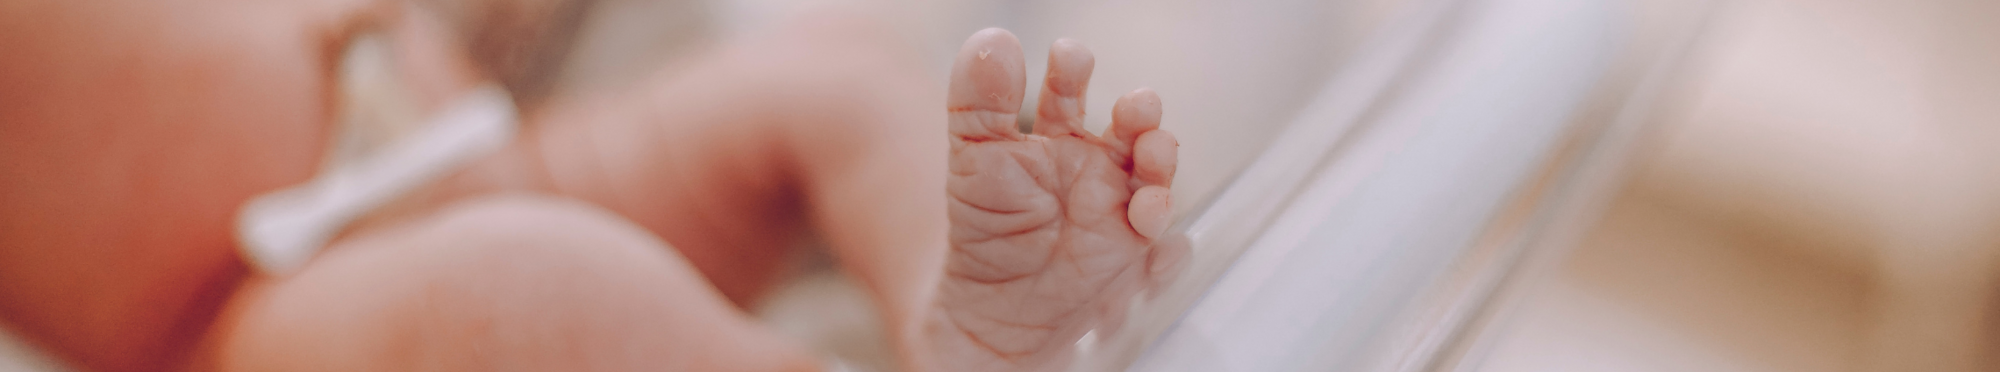 Neugeborenes streckt seinen Fuß aus